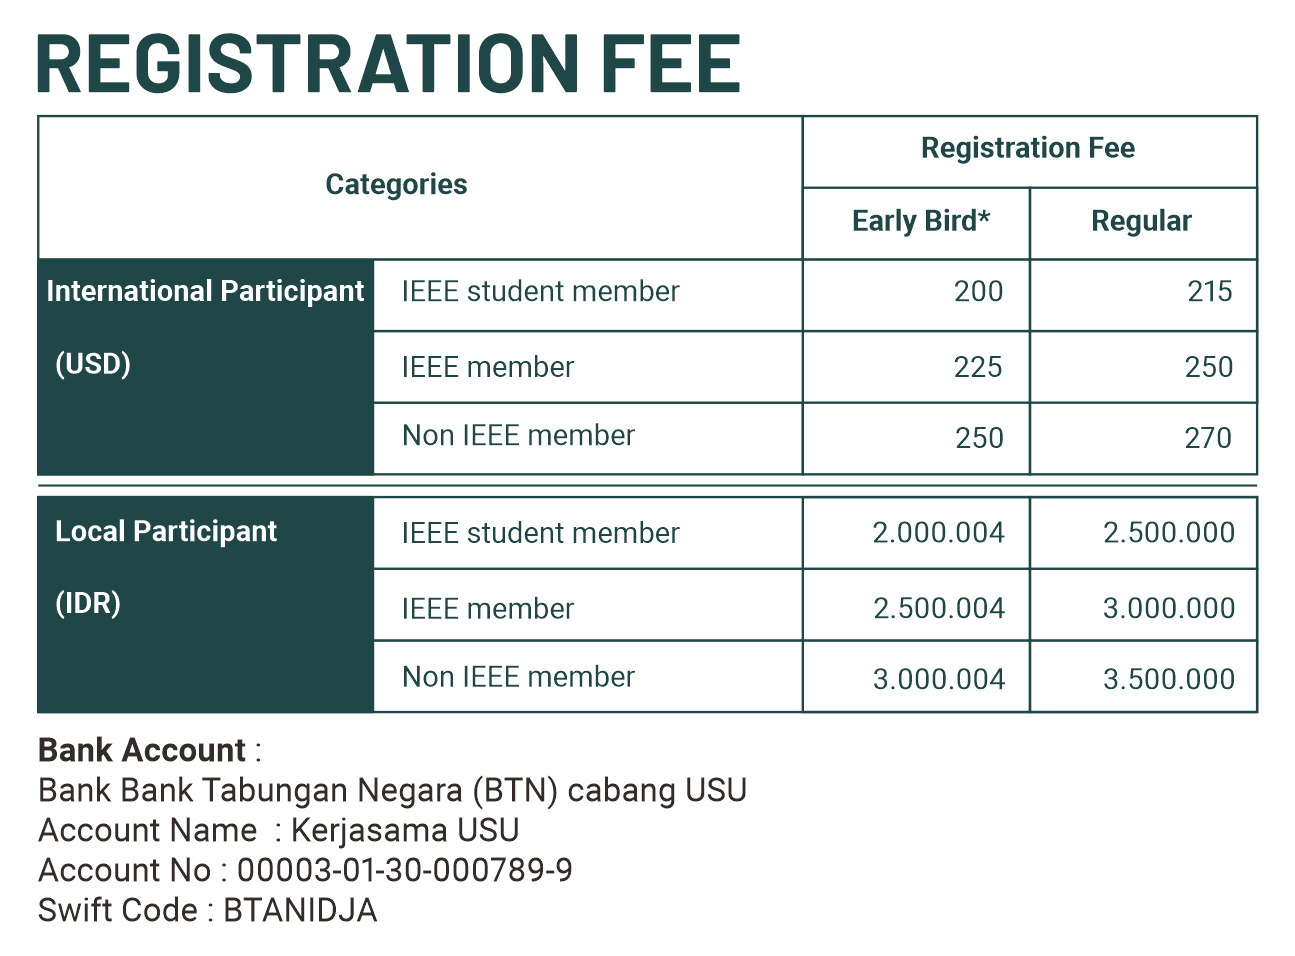 tasker registration fee promo code 2022